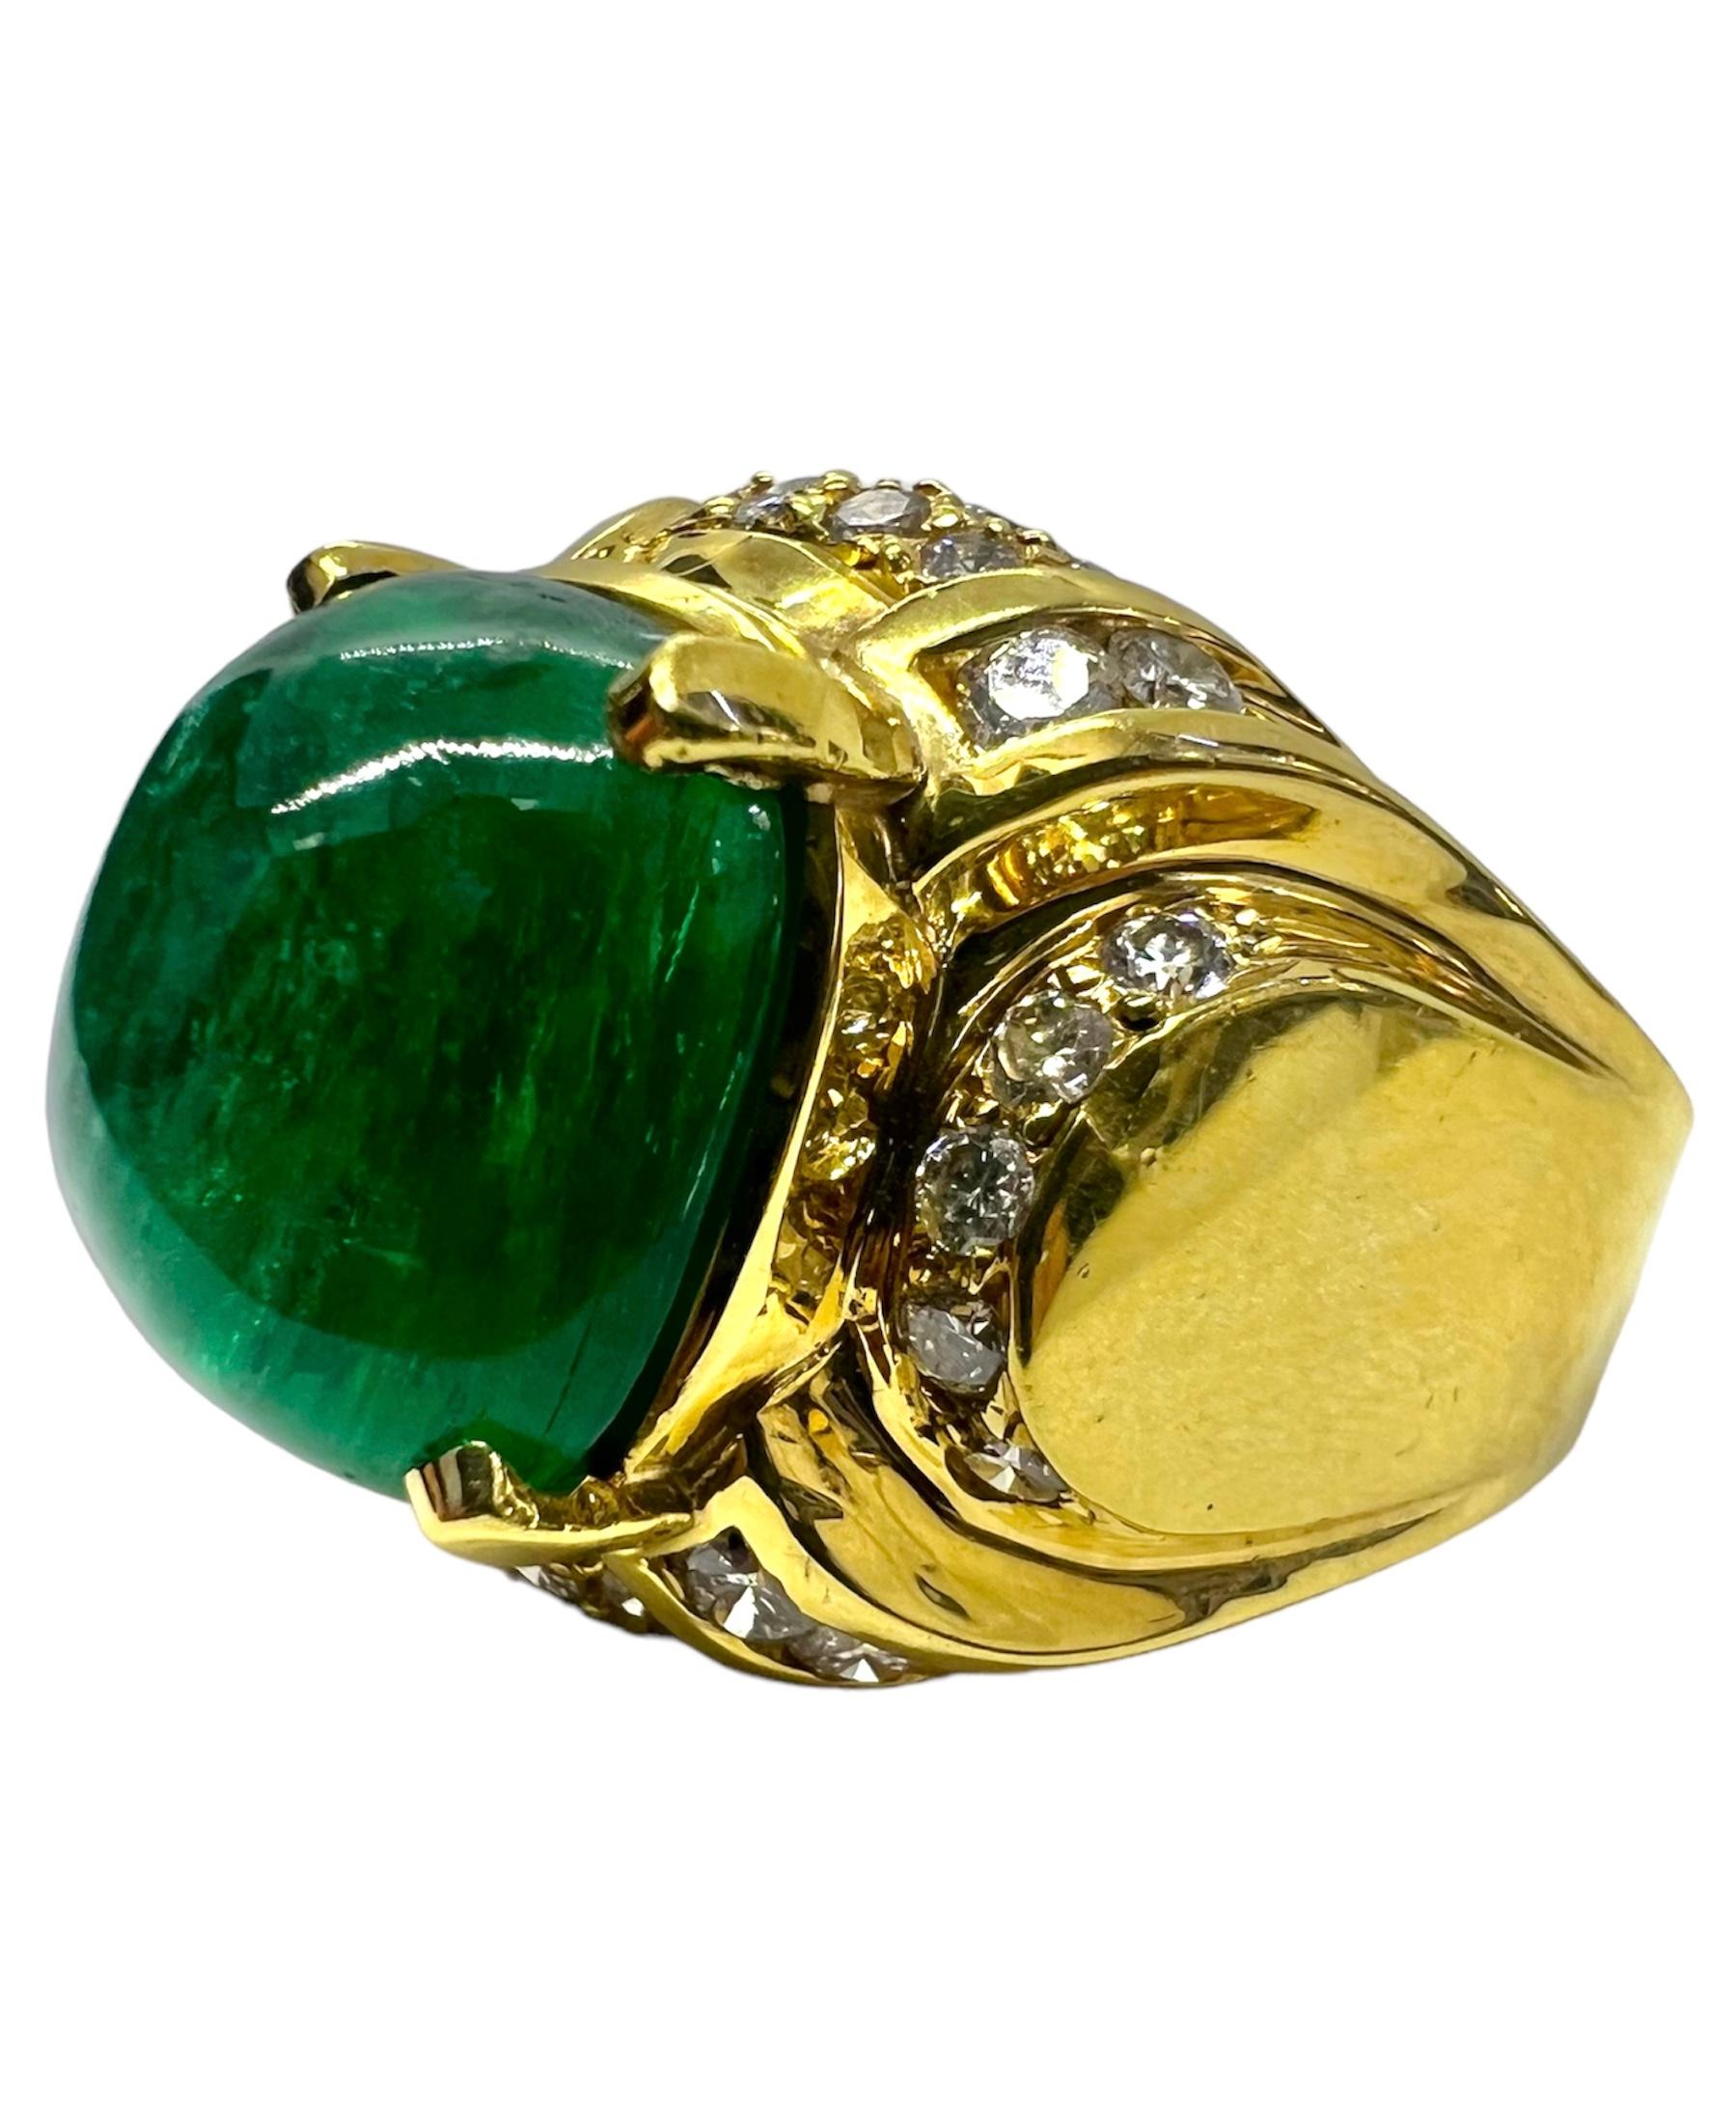 Gelbgoldring mit Cabochon-Smaragd in der Mitte, der mit Diamanten verziert ist.

Sophia D von Joseph Dardashti LTD ist seit 35 Jahren weltweit bekannt und lässt sich vom klassischen Art-Déco-Design inspirieren, das mit modernen Fertigungstechniken